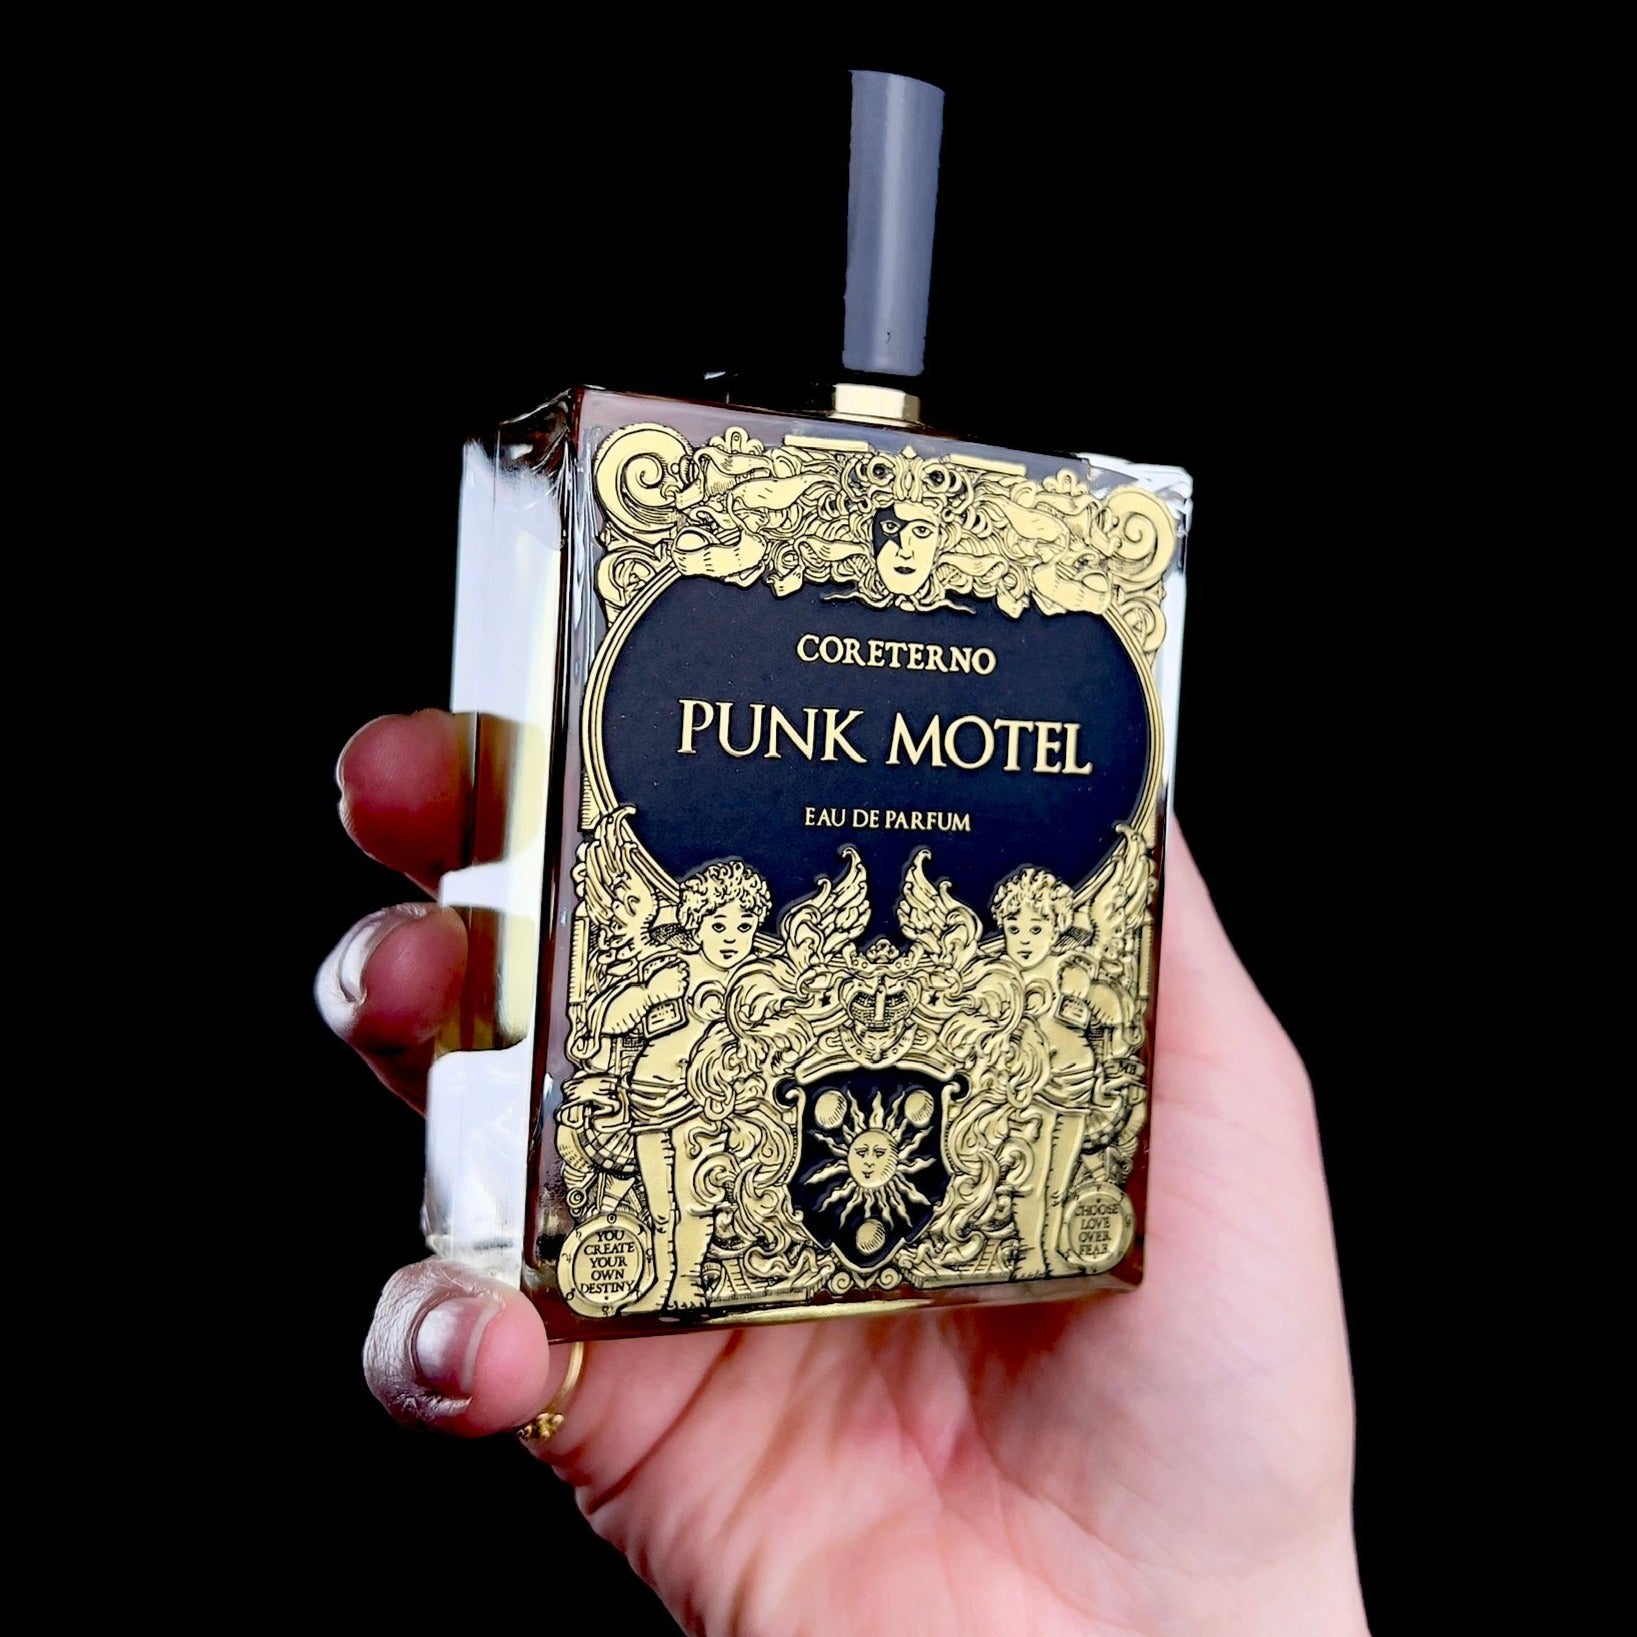 Punk Motel Parfum bottle shown in hand